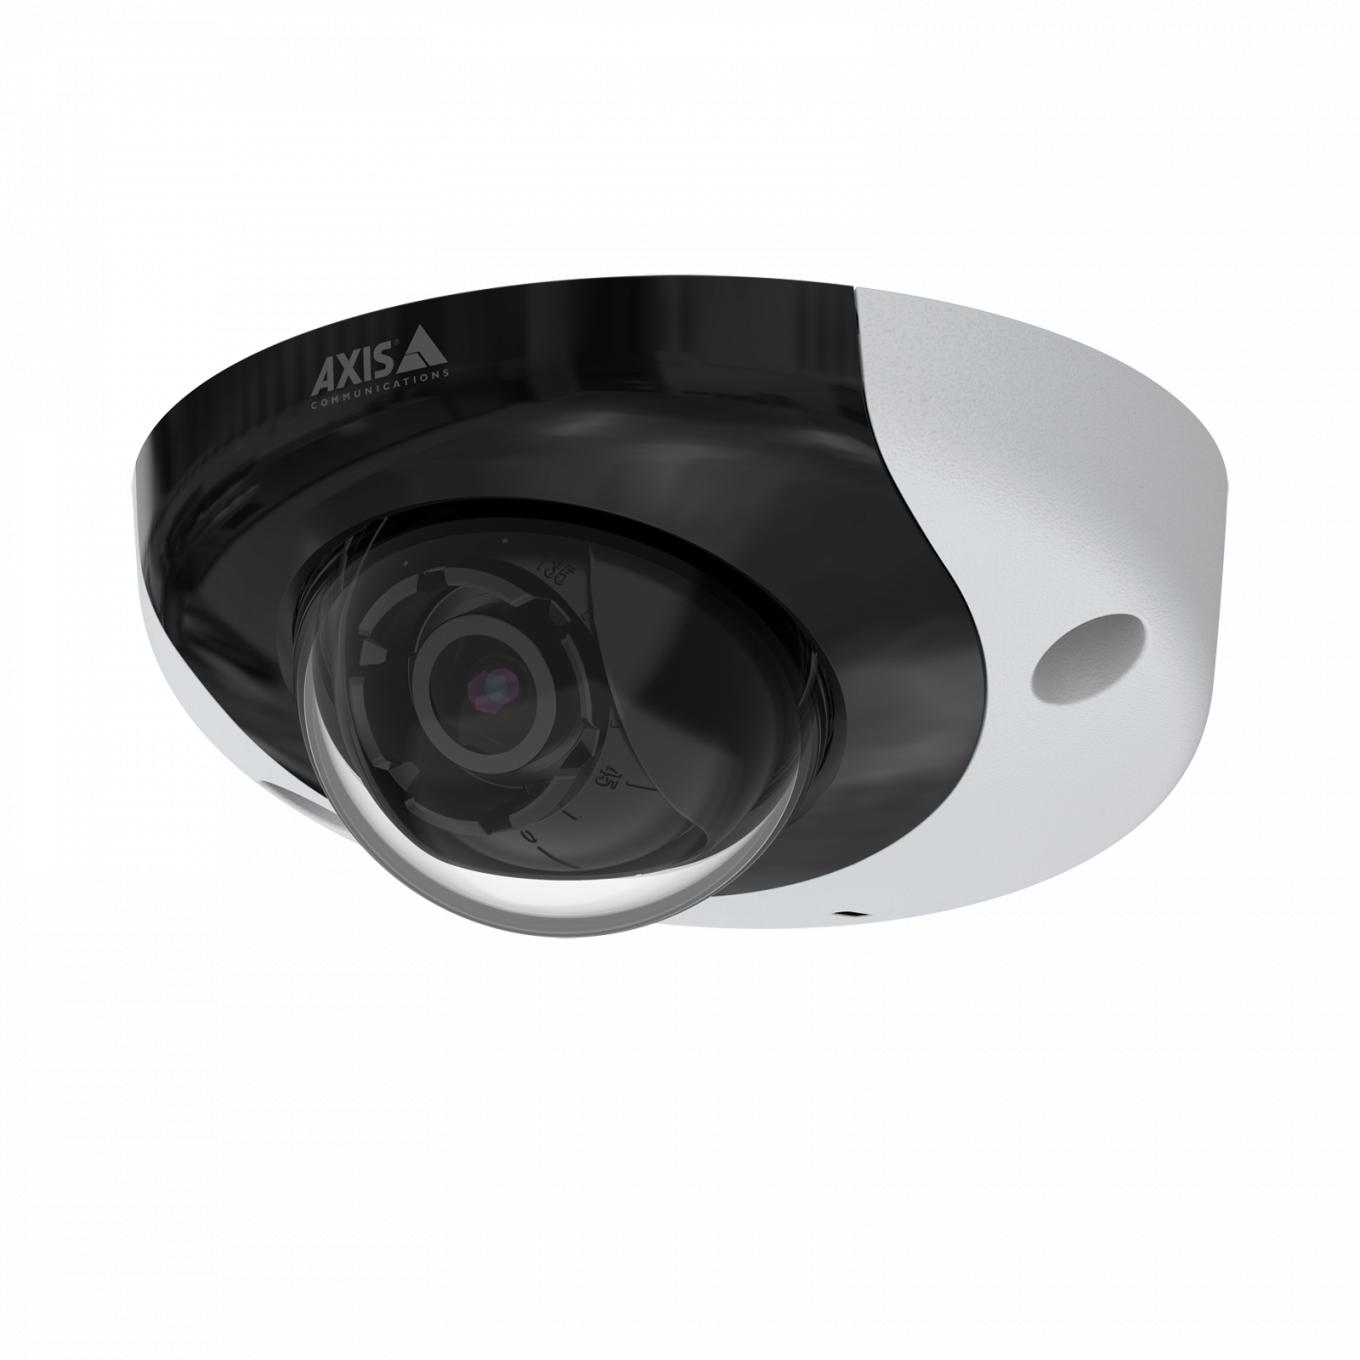 AXIS P3935-LR è una telecamera IP robusta e resistente alle manomissioni. Il dispositivo è visualizzato dall'angolo sinistro.